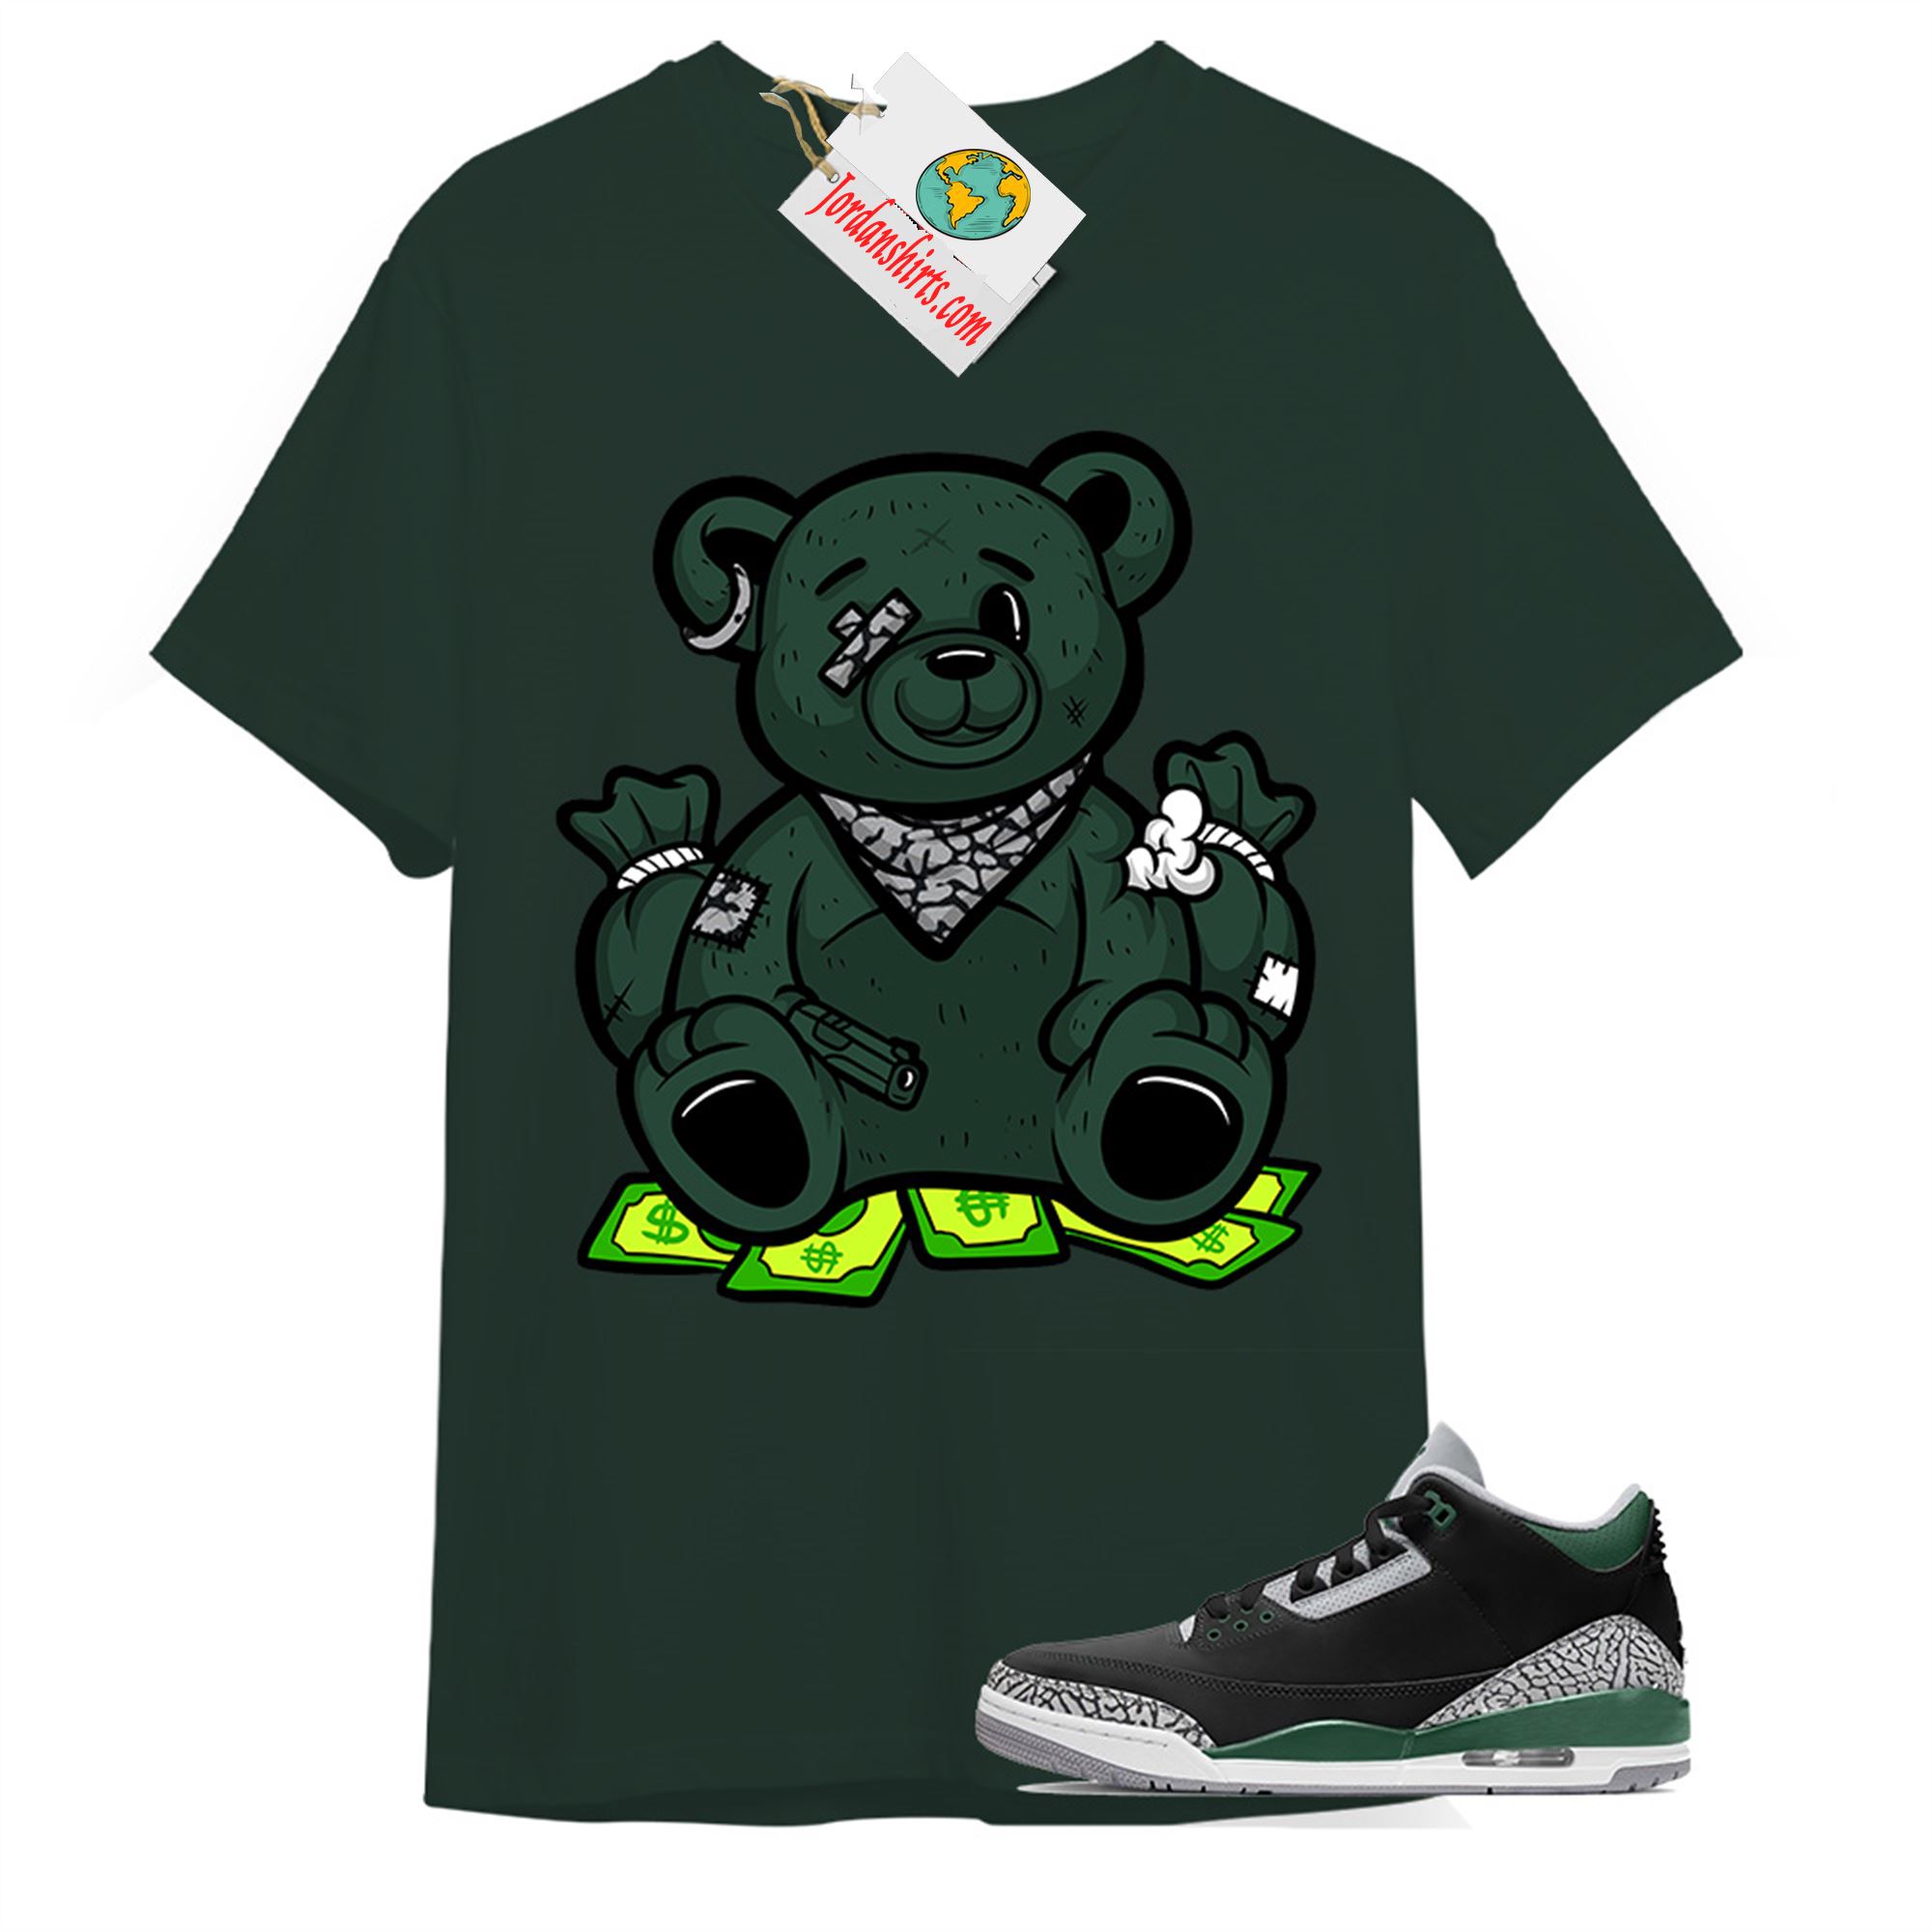 Jordan 3 Shirt, Rich Teddy Bear Gangster Forest Green T-shirt Air Jordan 3 Pine Green 3s Full Size Up To 5xl